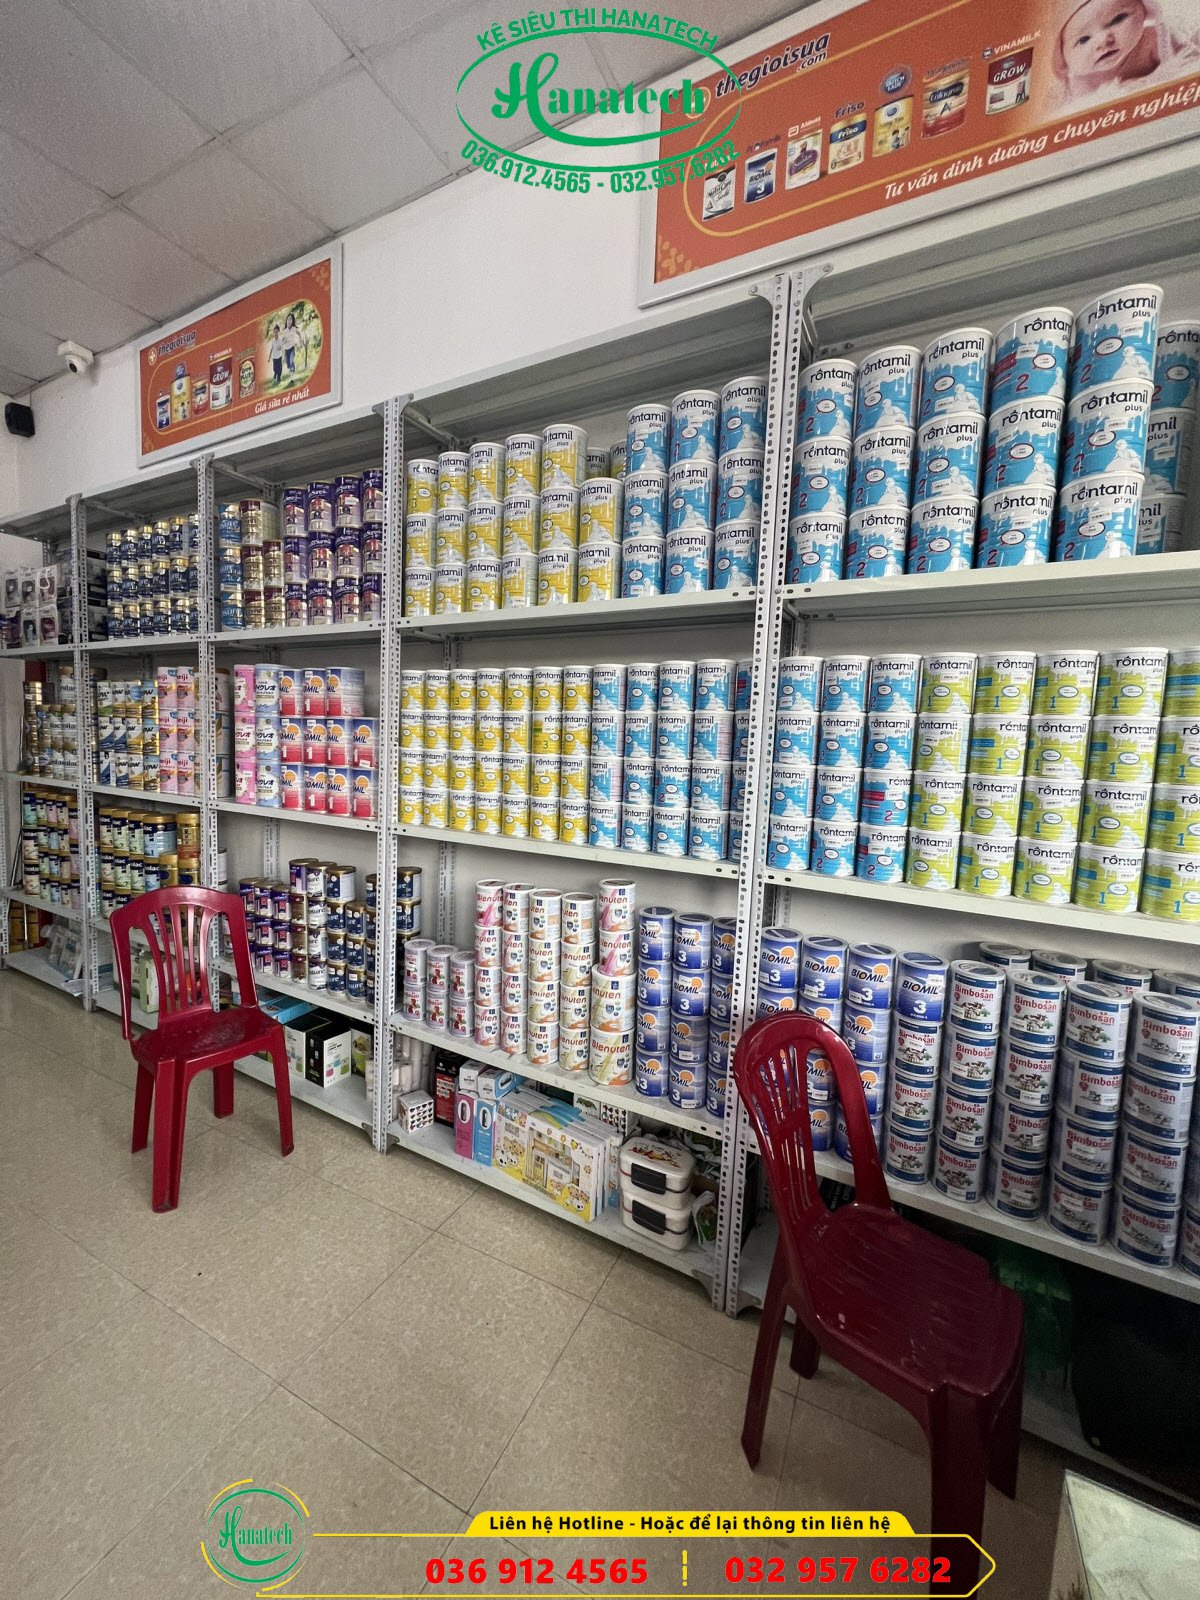 Giá kệ trưng bày cho cửa hàng shop Sữa Bỉm tại Tây Ninh